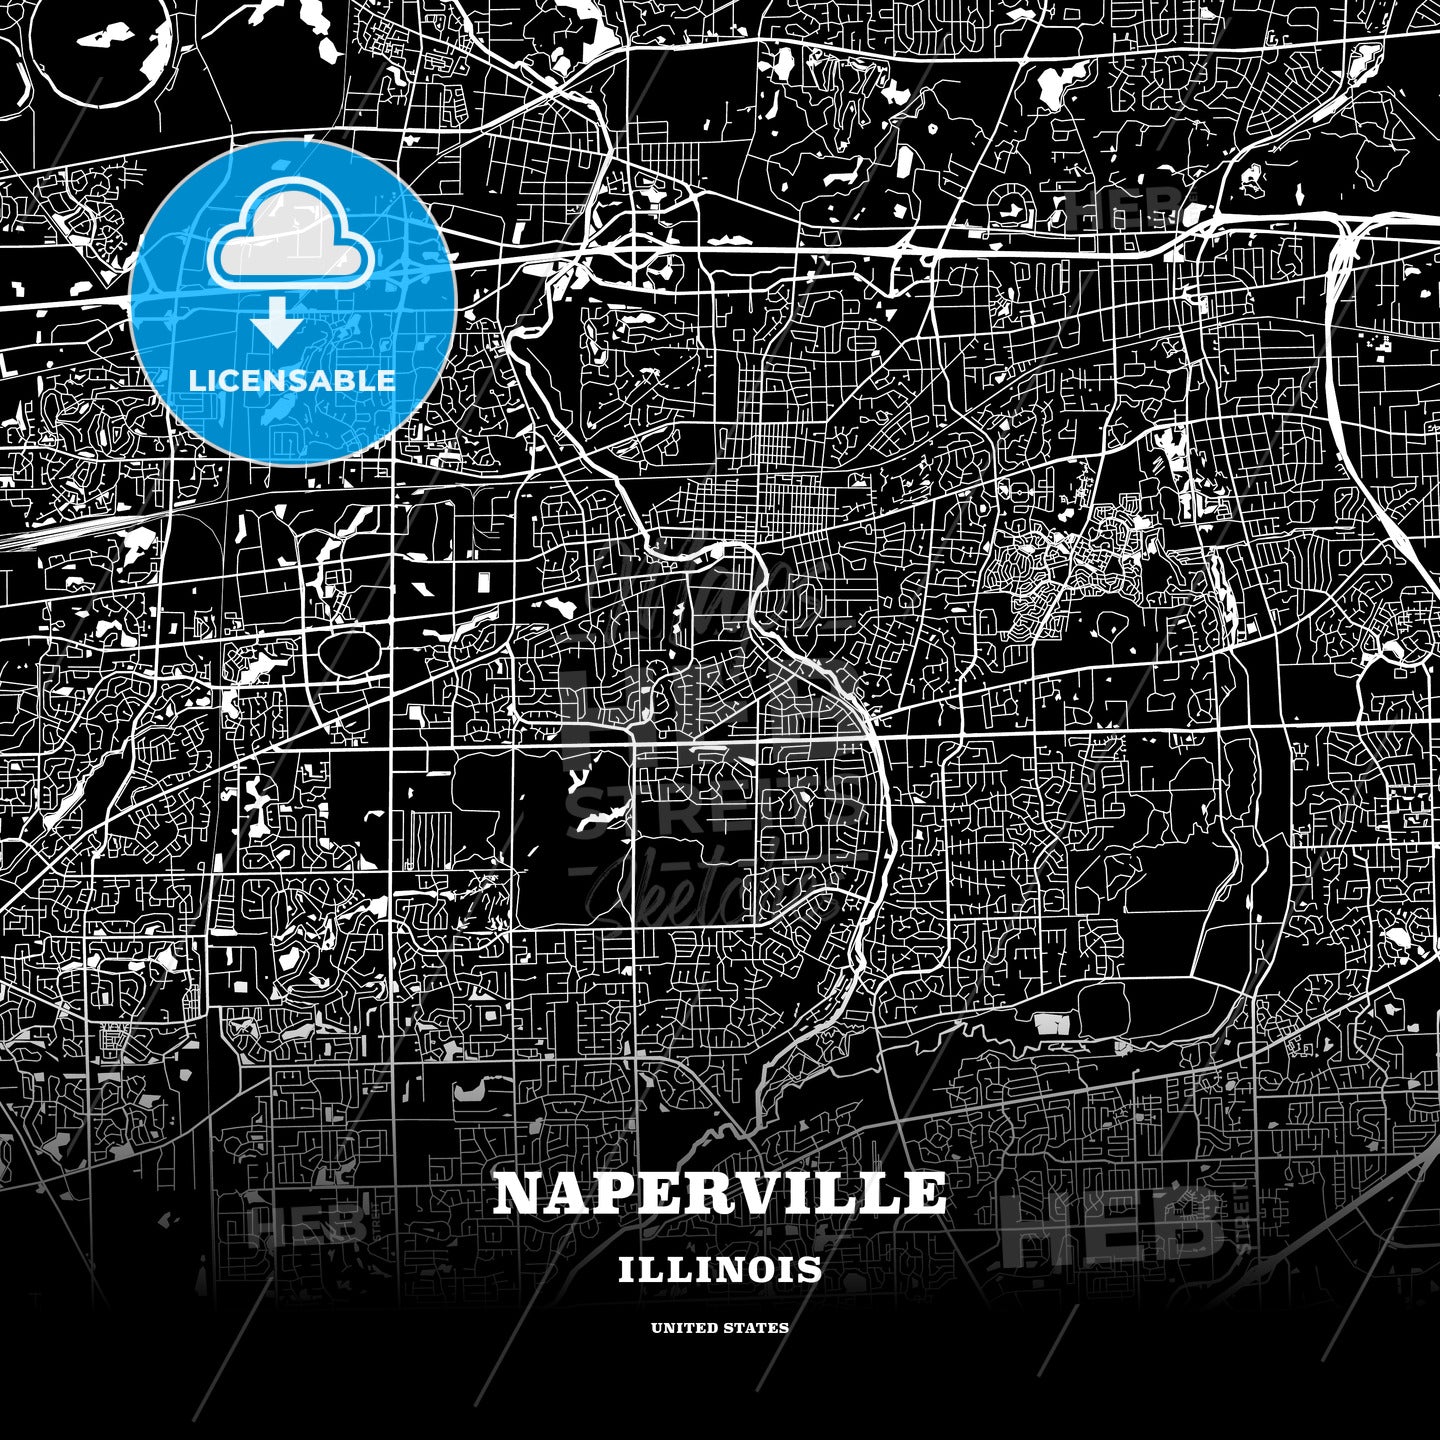 Naperville, Illinois, USA map